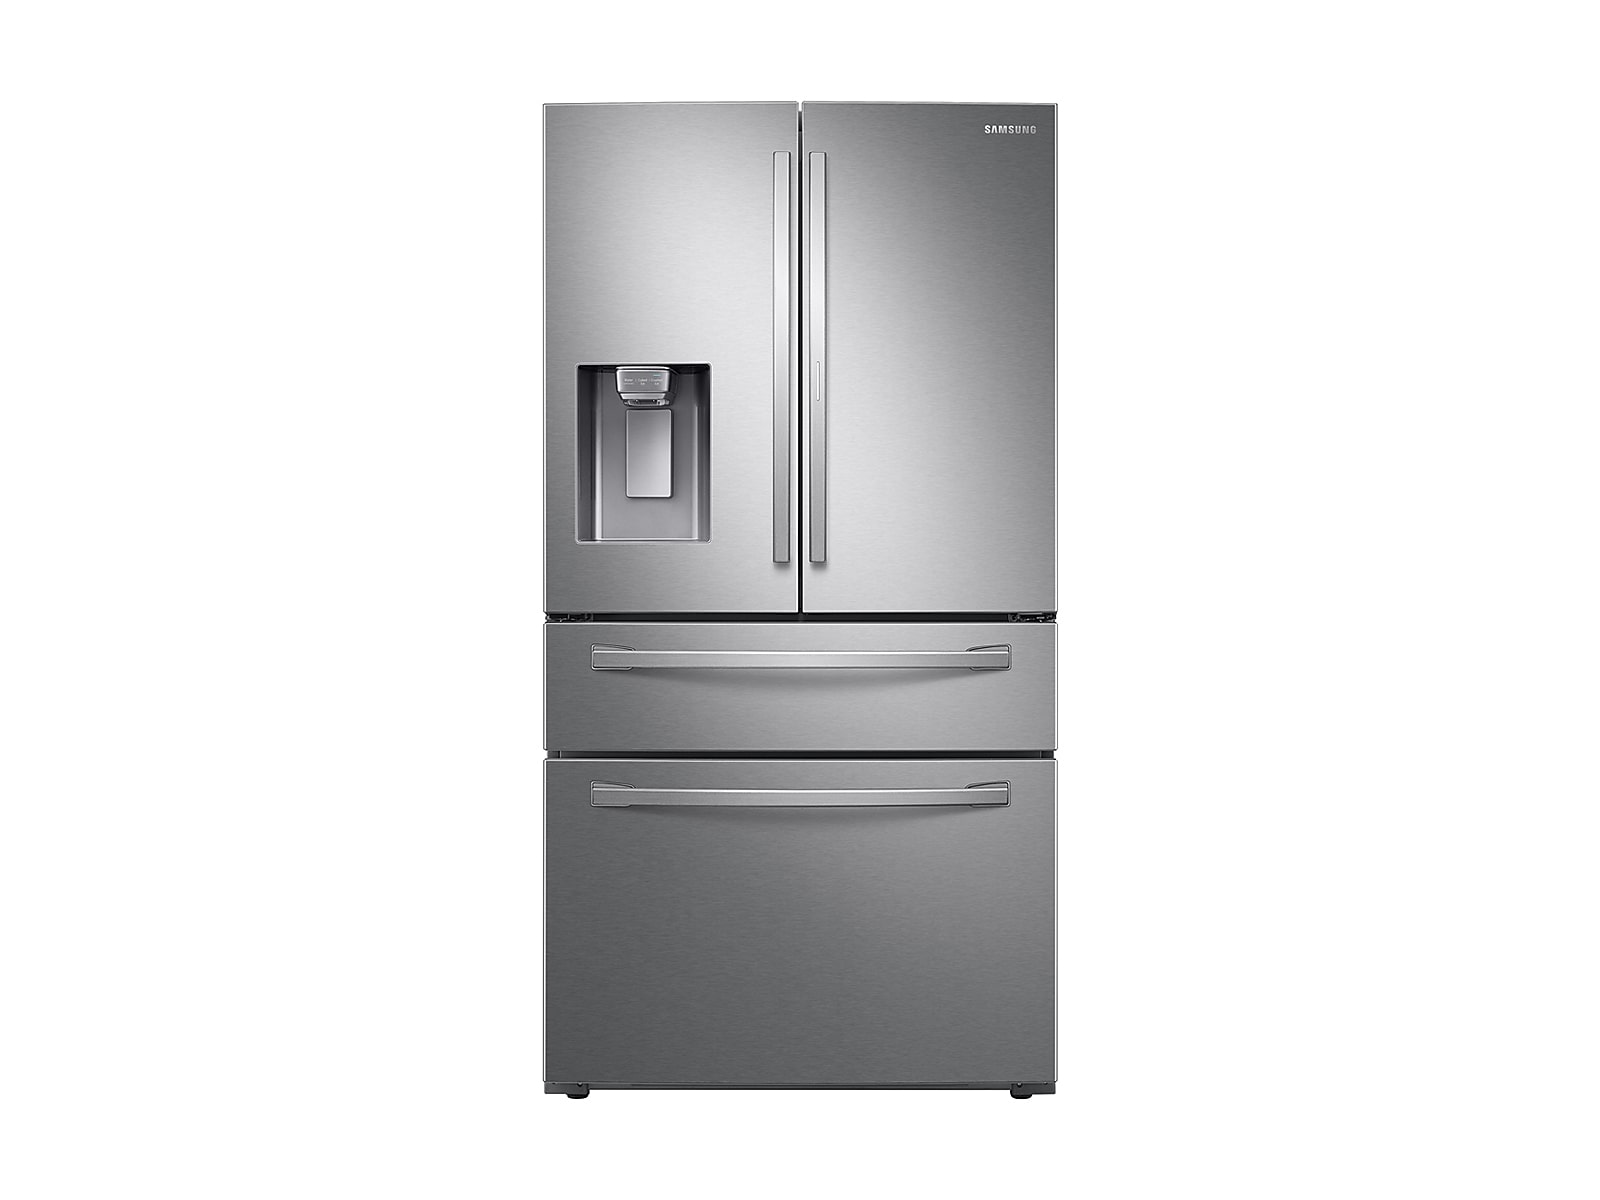 Samsung 28 cu. ft. Food Showcase 4-Door French Door Refrigerator in Silver(RF28R7351SR/AA)